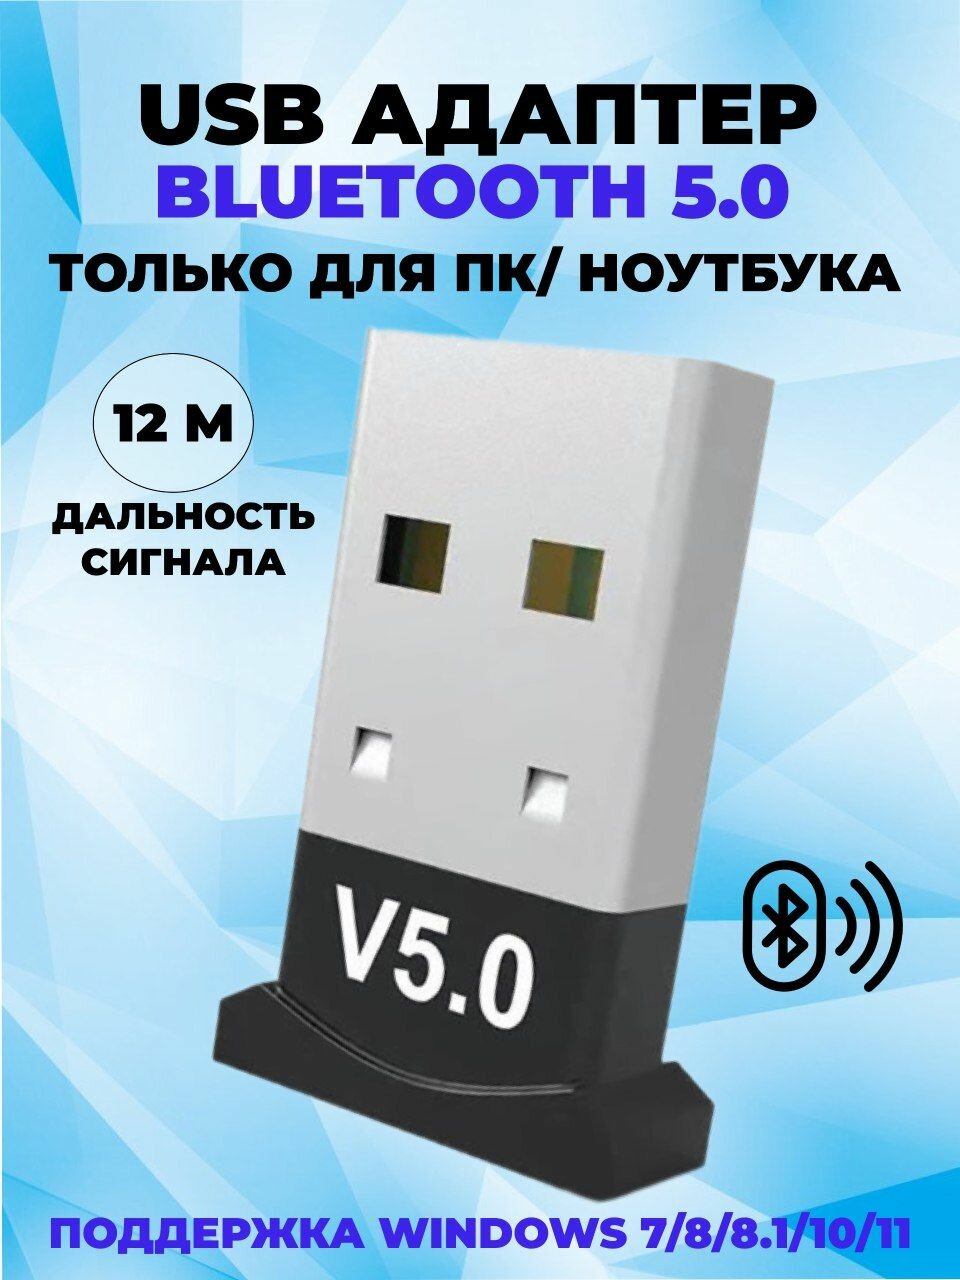 Адаптер Bluetooth 5.0 для компьютера / блютуз адаптер для пк / USB Bluetooth для ноутбука / беспроводных наушников мышки клавиатуры принтера телефона геймпада и колонки / USB 2.0 3.0 4.0